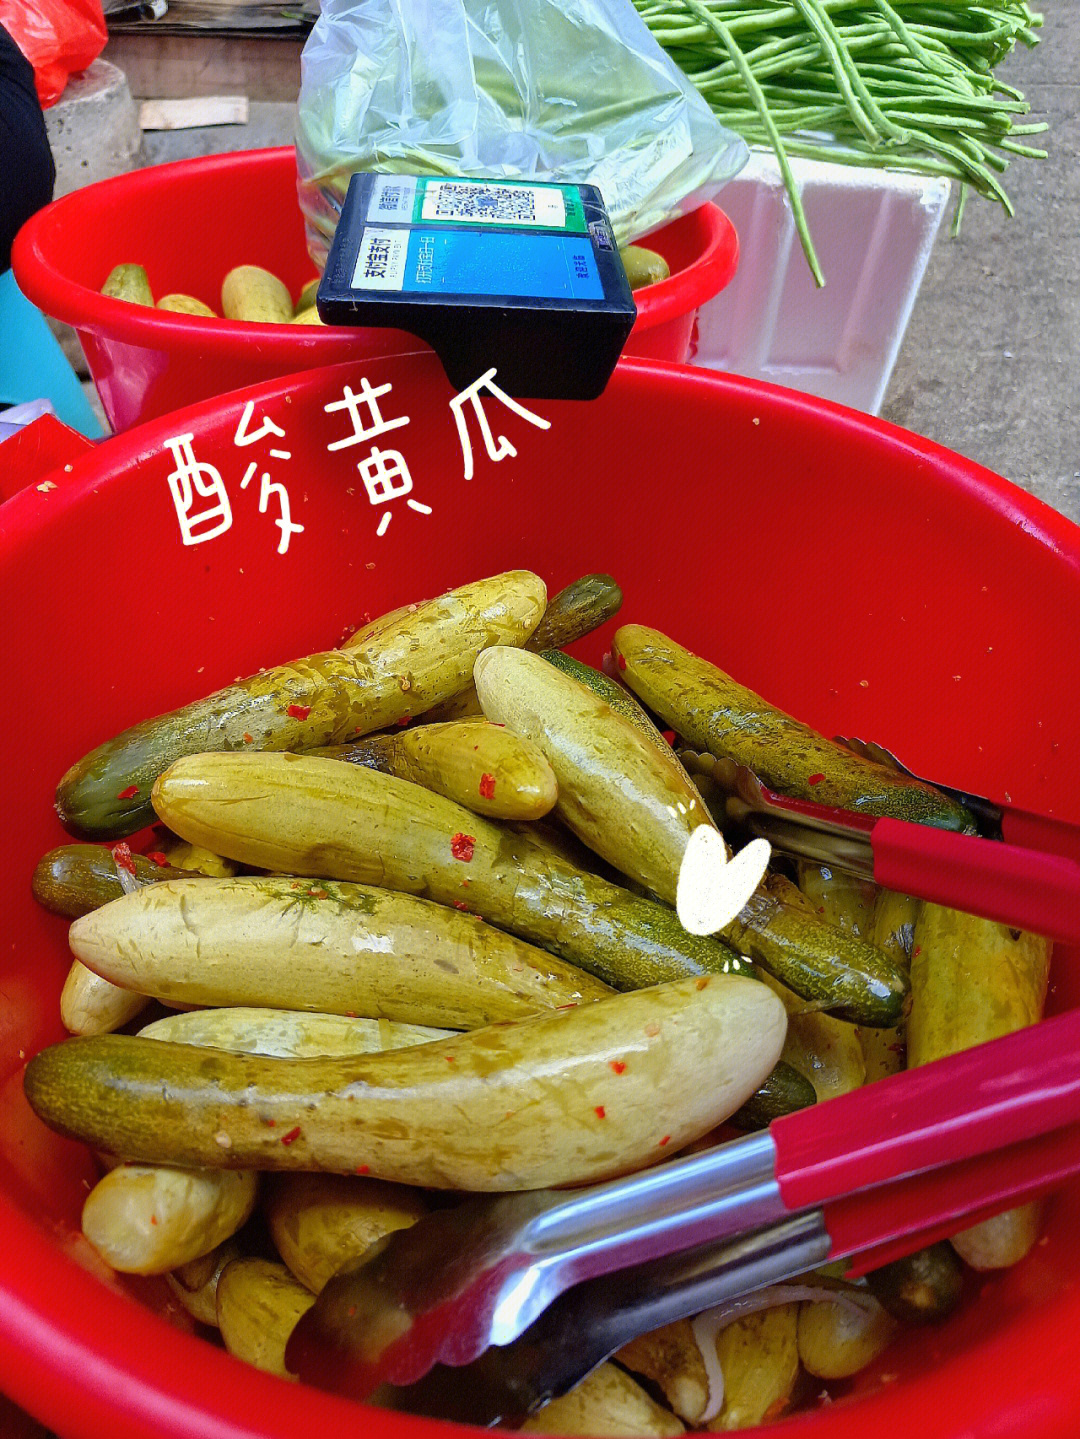 来自会昌县的小吃,酸水酸黄瓜我的最爱别看着没什么其实每一样都是辣